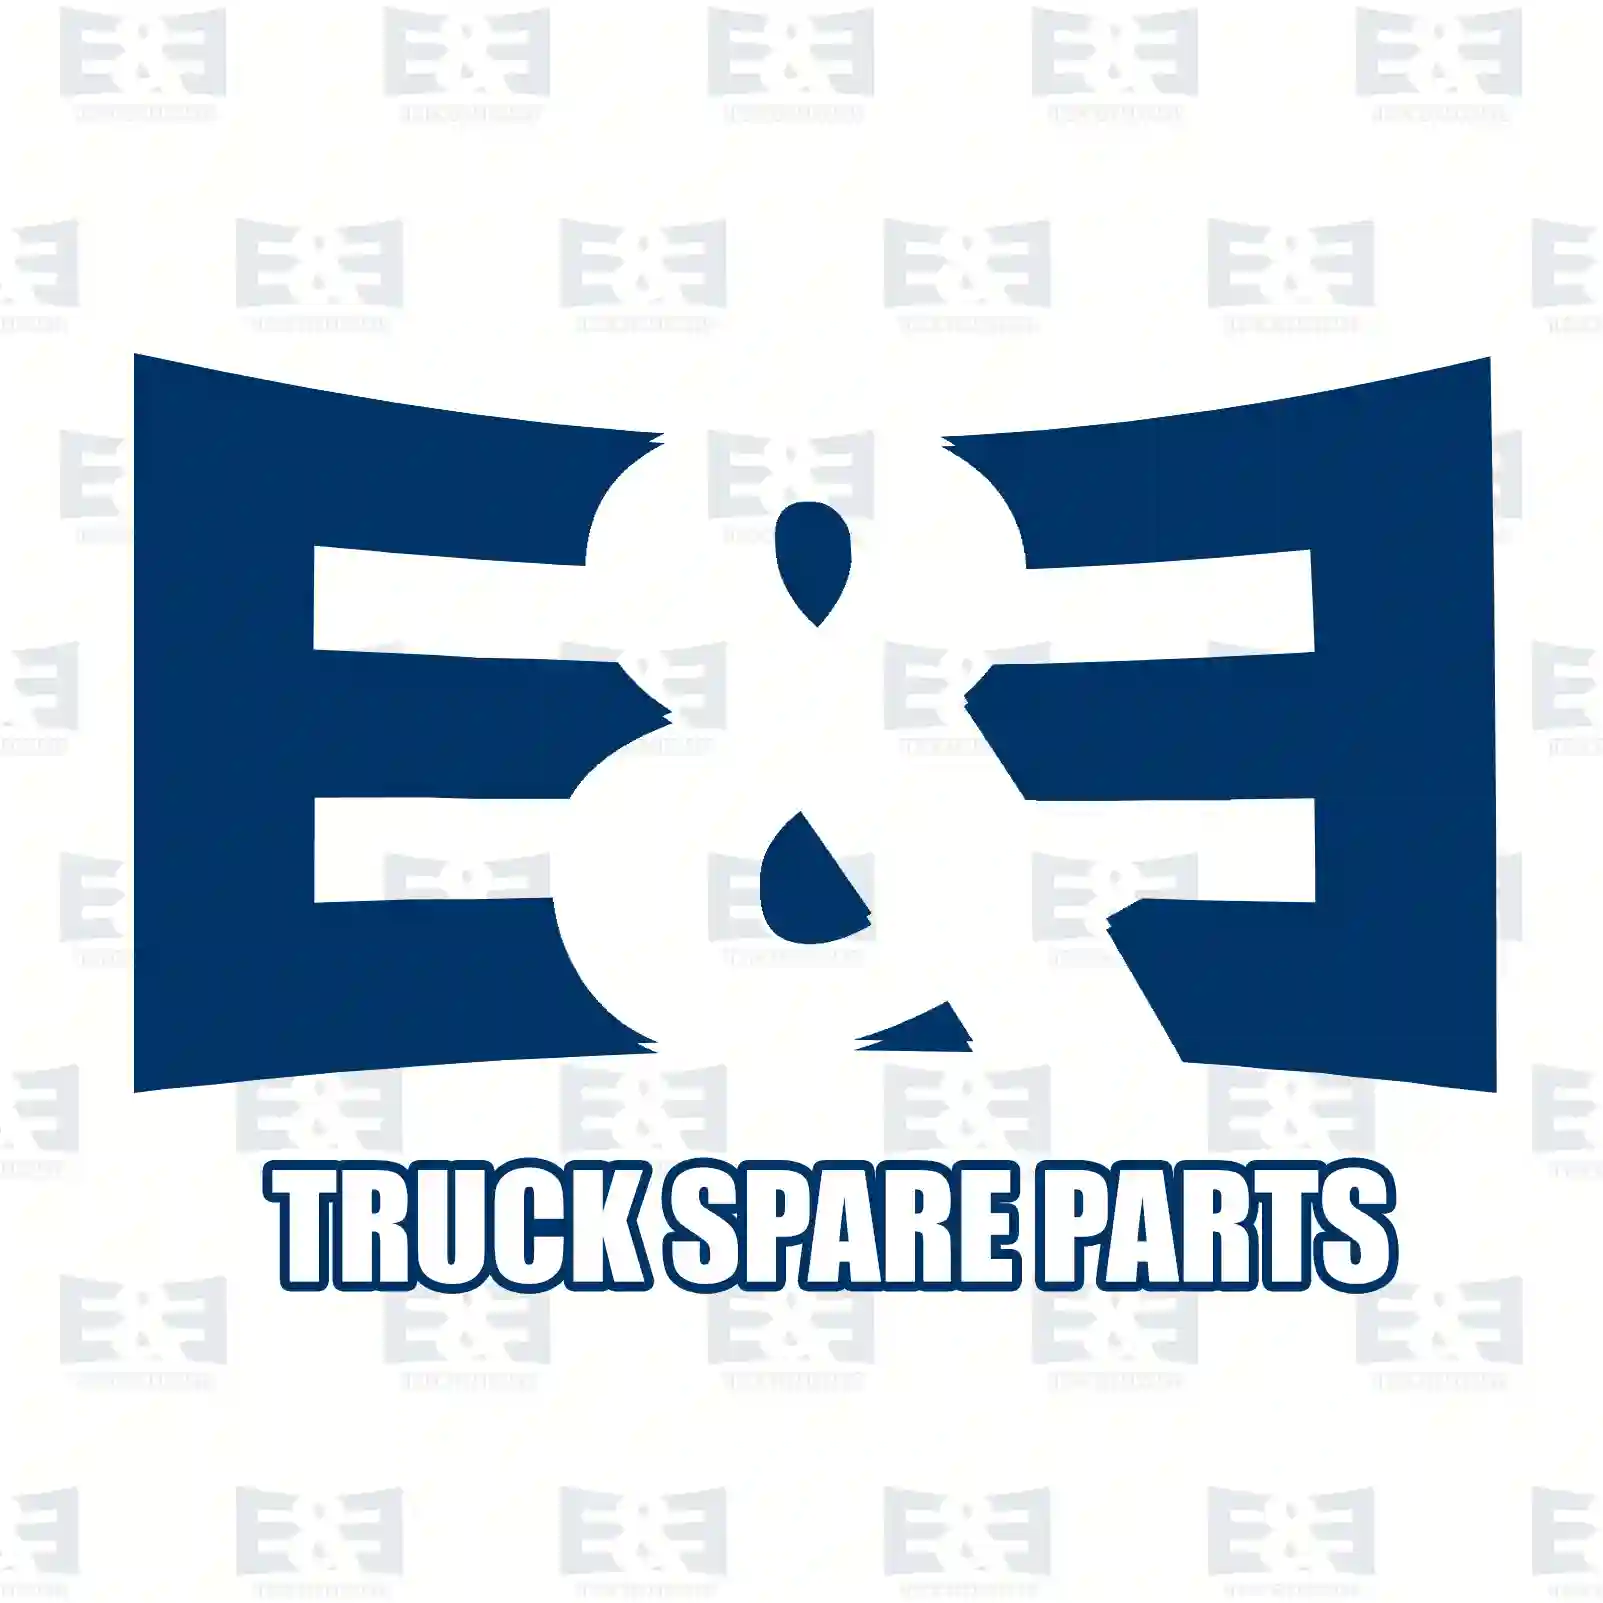 Filter, 2E2275835, 1515990 ||  2E2275835 E&E Truck Spare Parts | Truck Spare Parts, Auotomotive Spare Parts Filter, 2E2275835, 1515990 ||  2E2275835 E&E Truck Spare Parts | Truck Spare Parts, Auotomotive Spare Parts